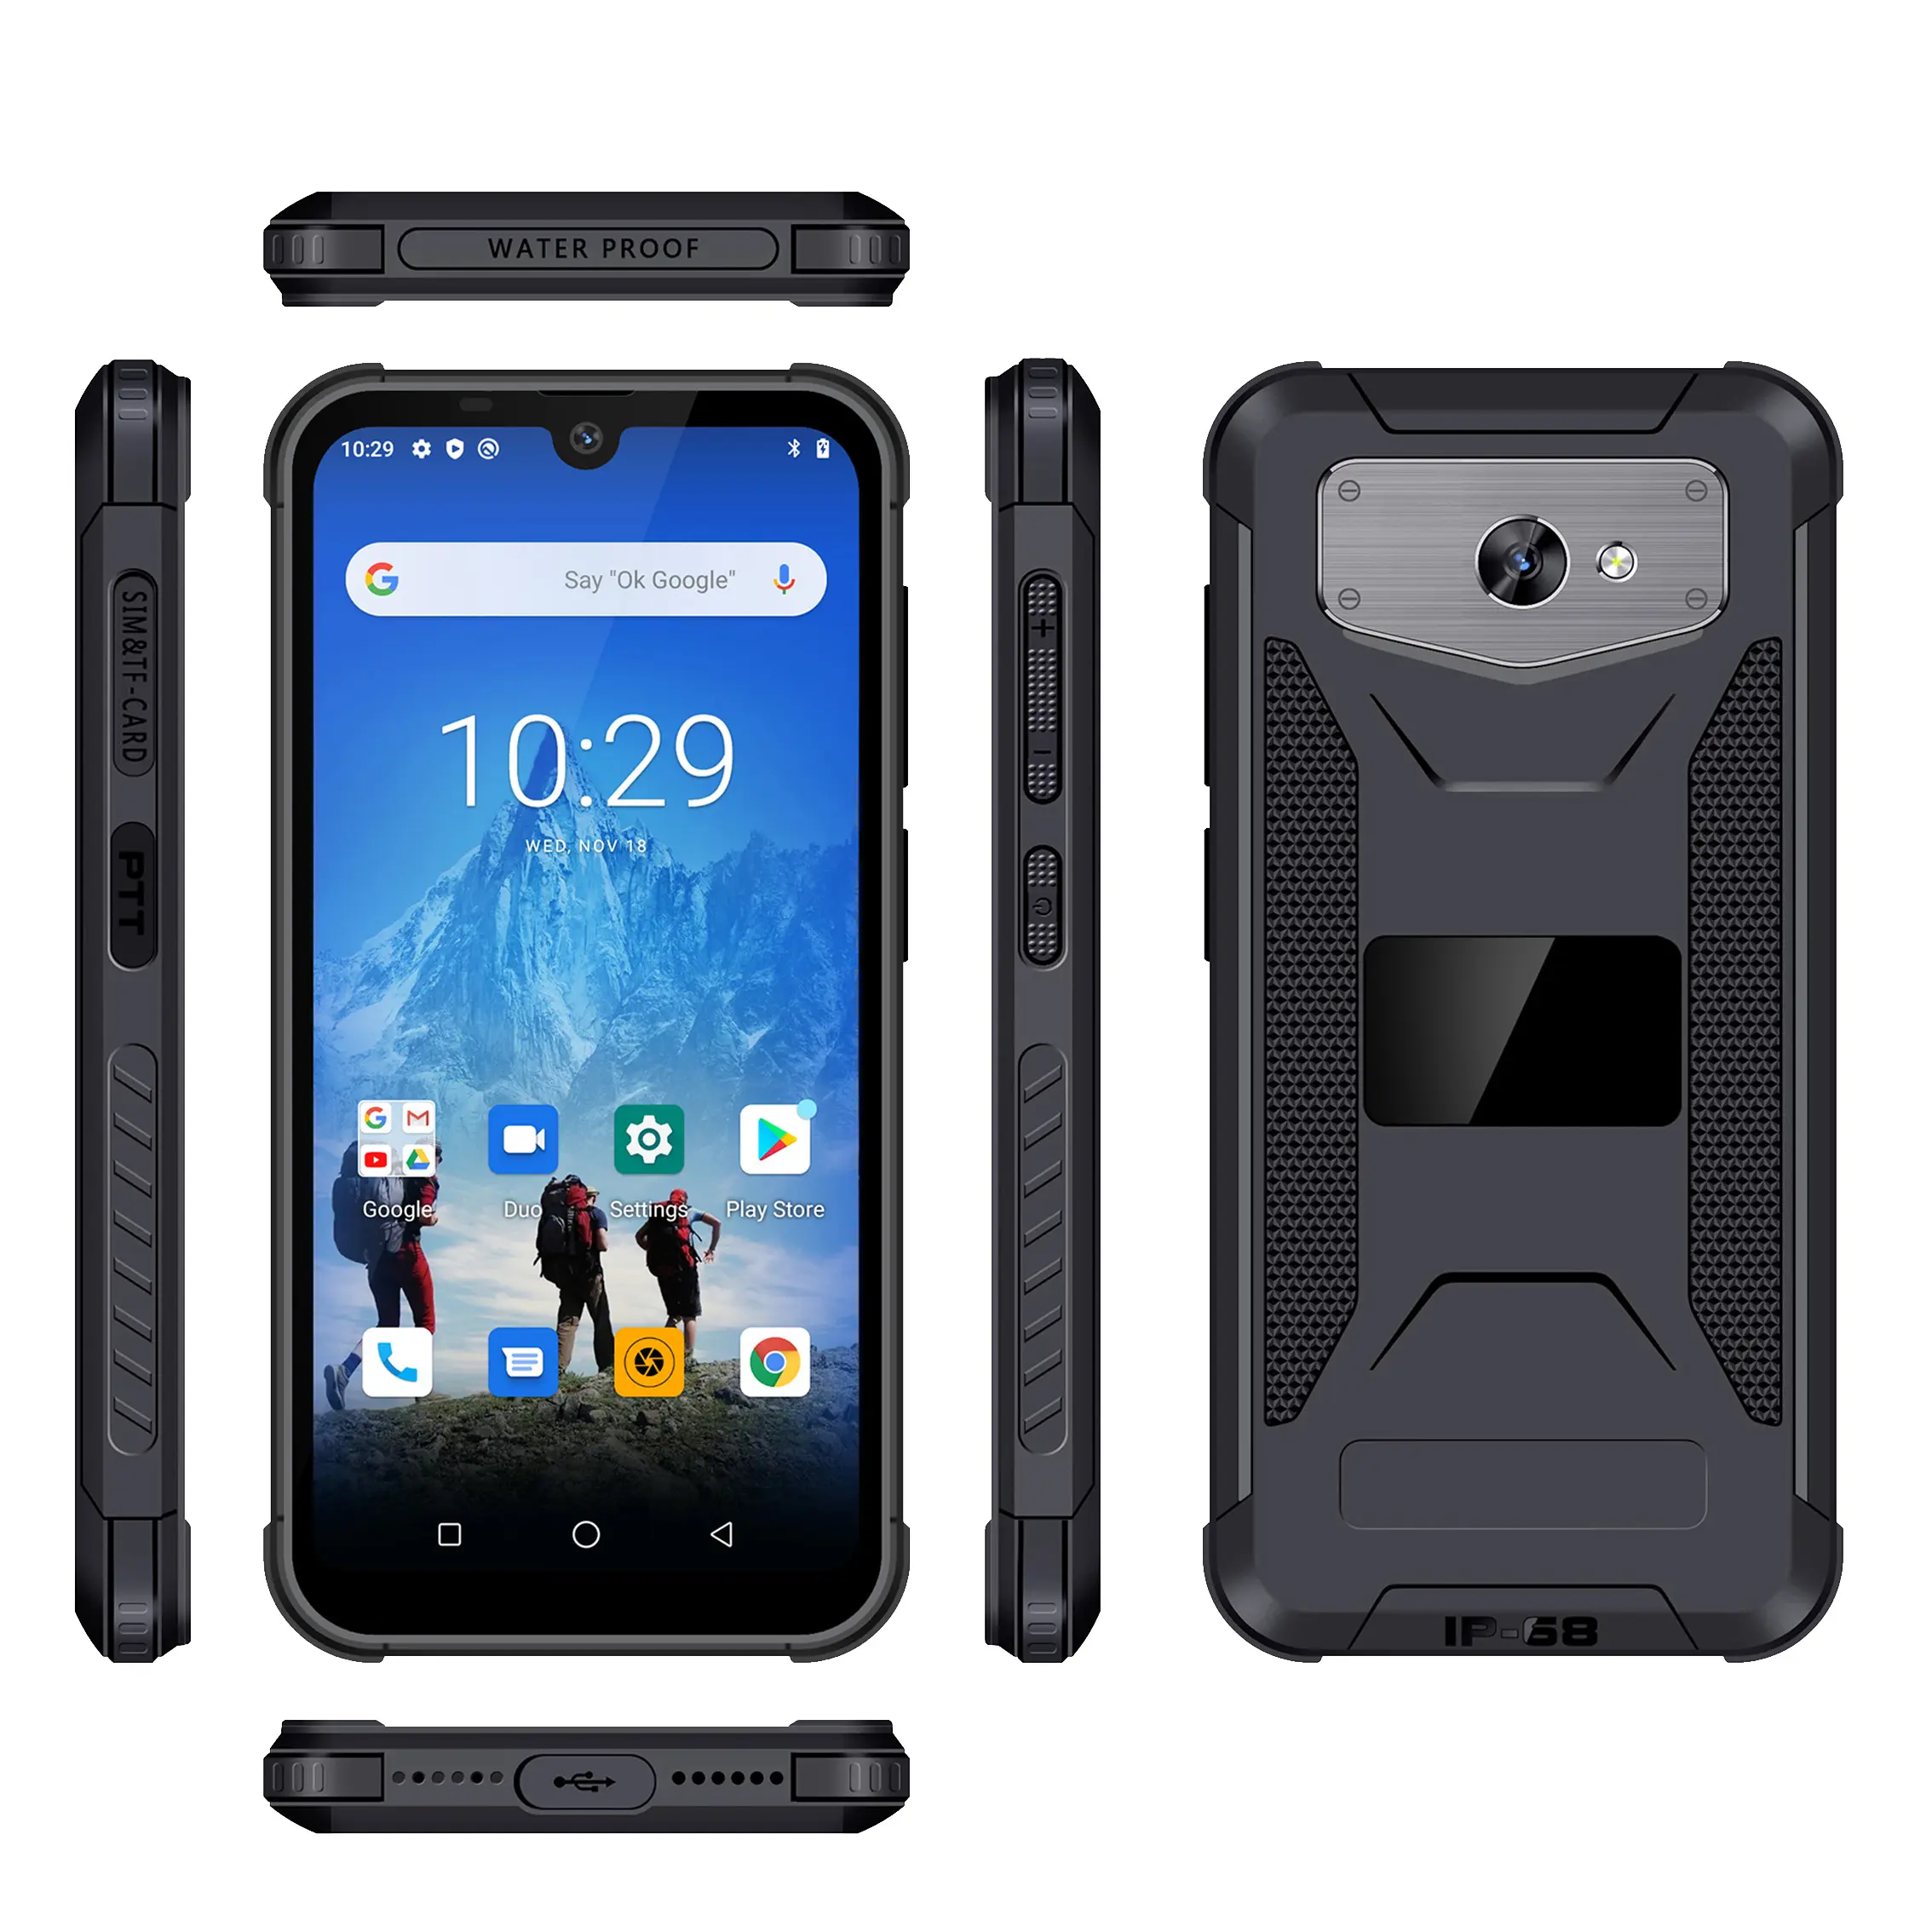 מרבי הנחה Phonemax M1s הכפול 4g מוקשח טלפון 3G + 32GB זול אנדרואיד נייד עמיד למים NFC wifi qcta Core 3G & 4G Smartphone